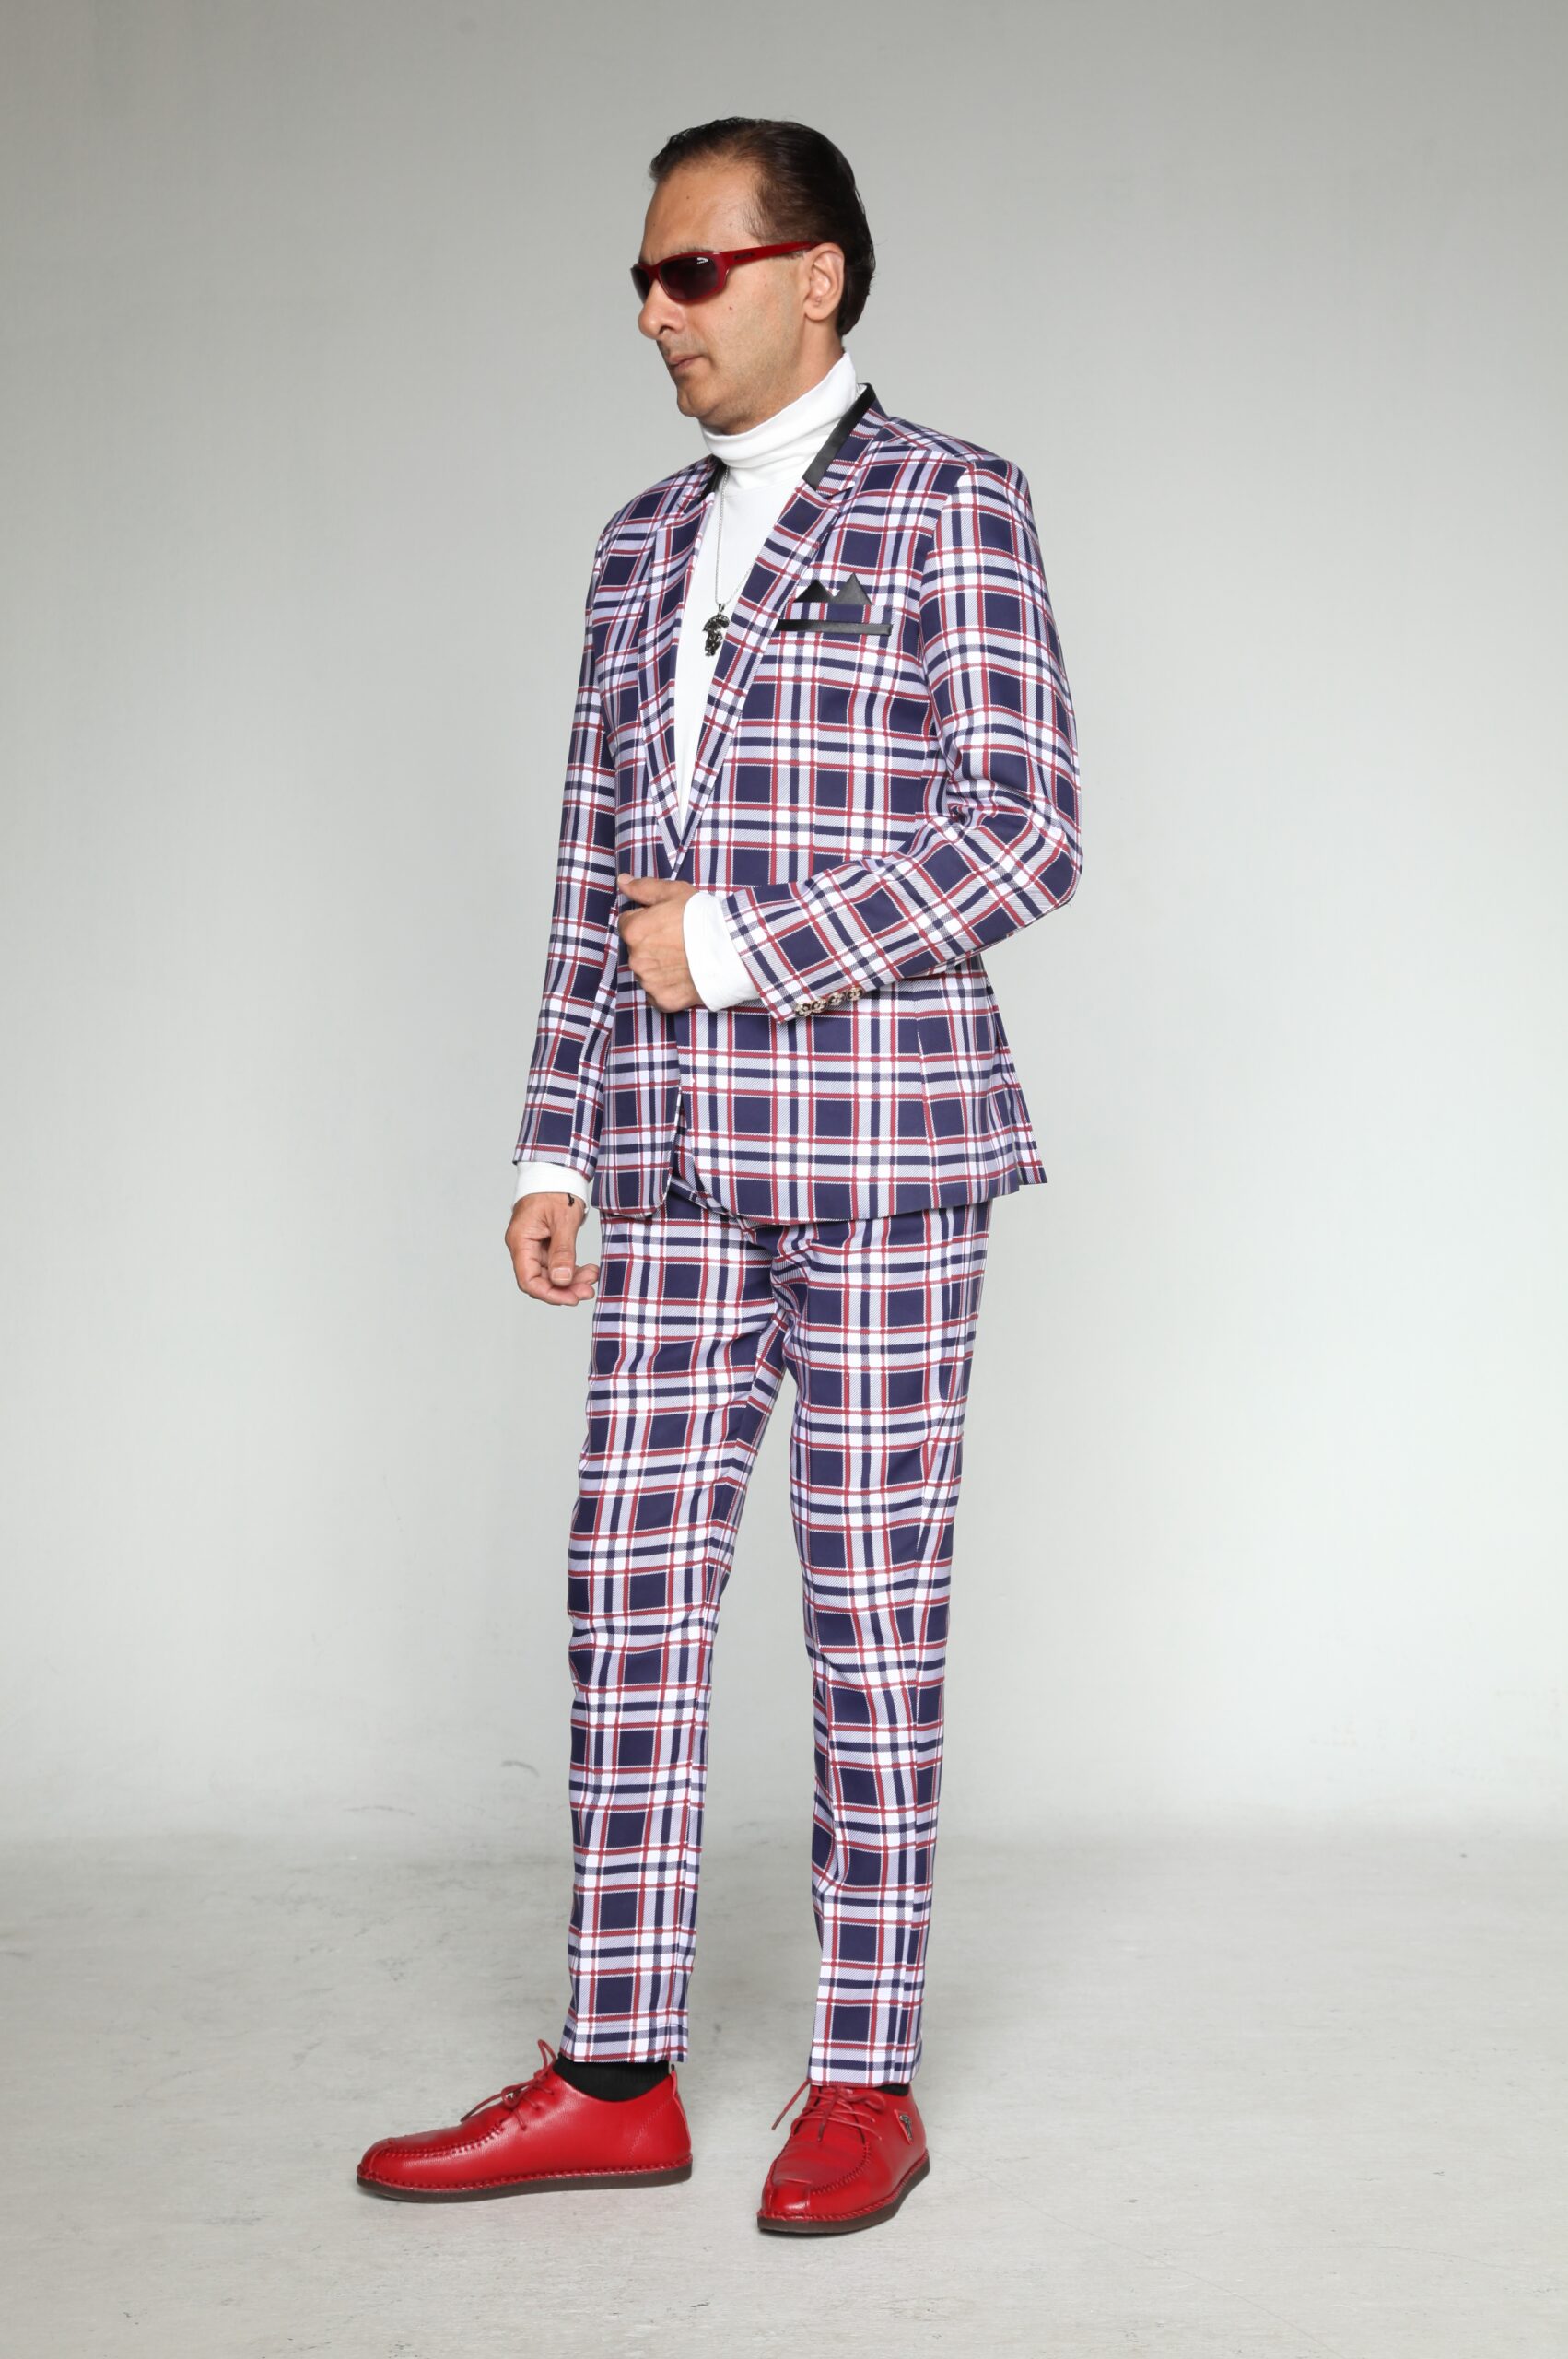 Mst 5004 01 Rent Rental Hire Tuxedo Suit Black Tie Suit Designer Suits Shop Tailor